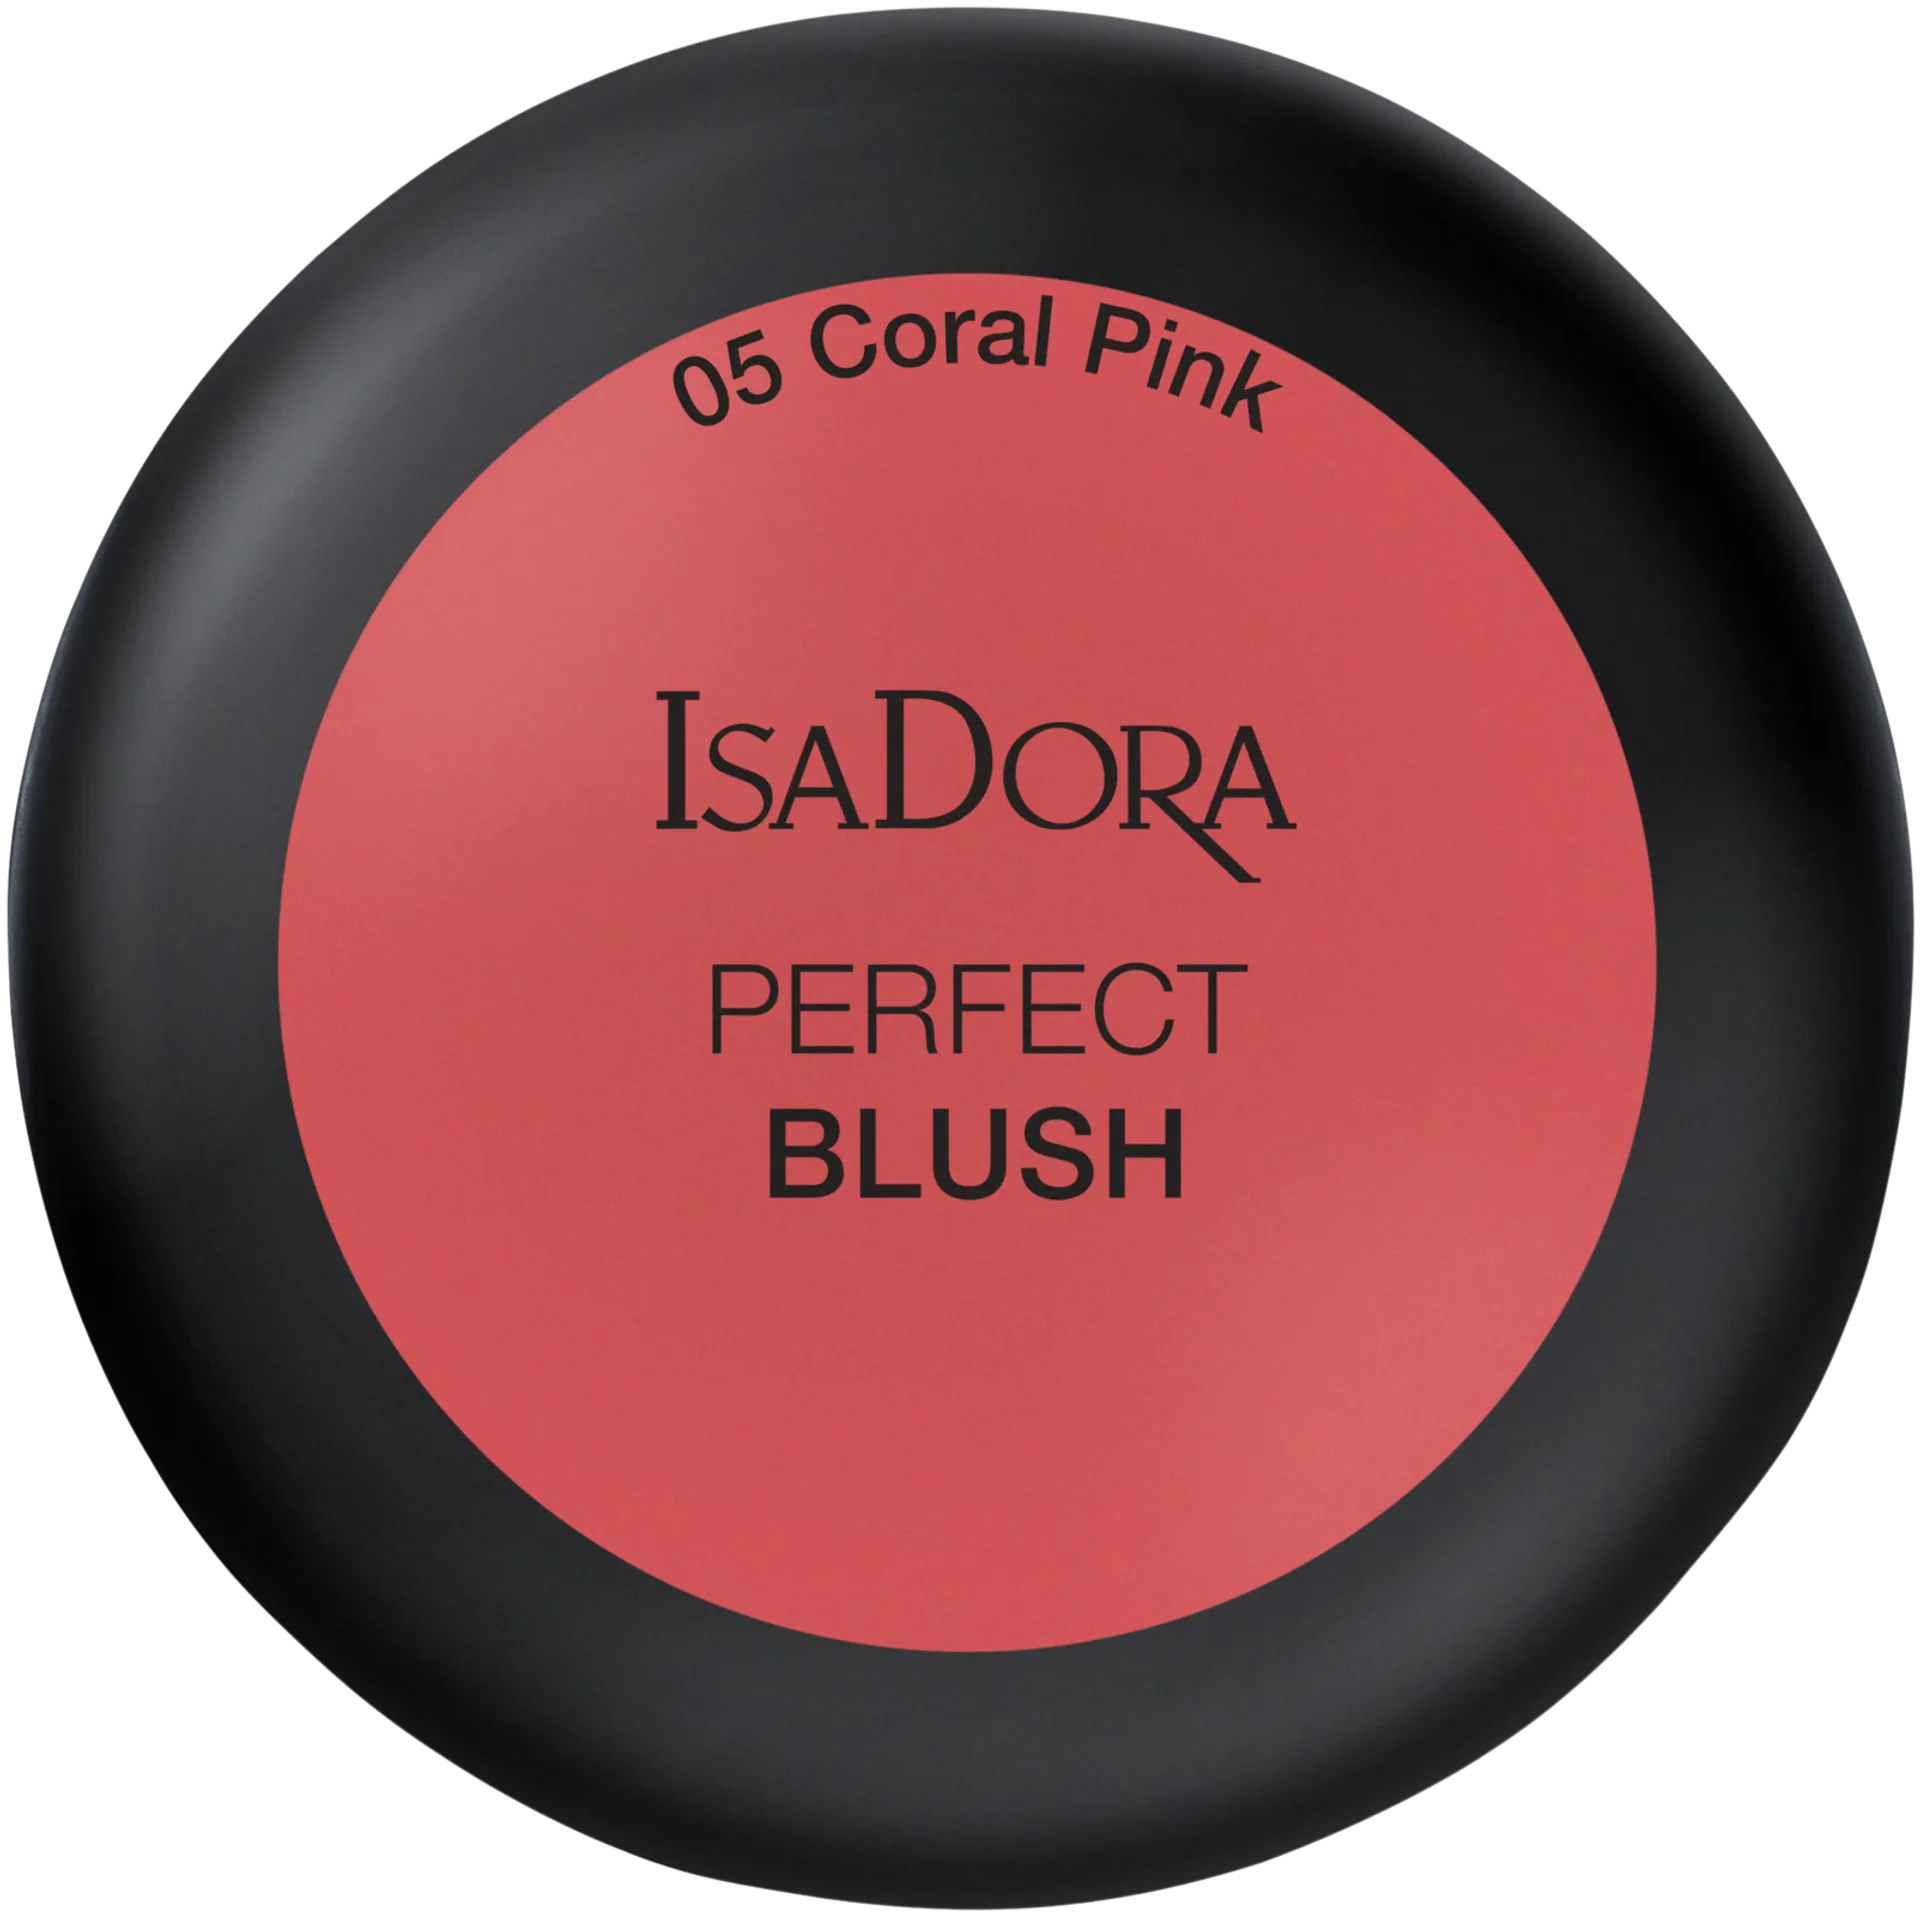 IsaDora Perfect Blush Poskipuna 05 Coral Pink - 2